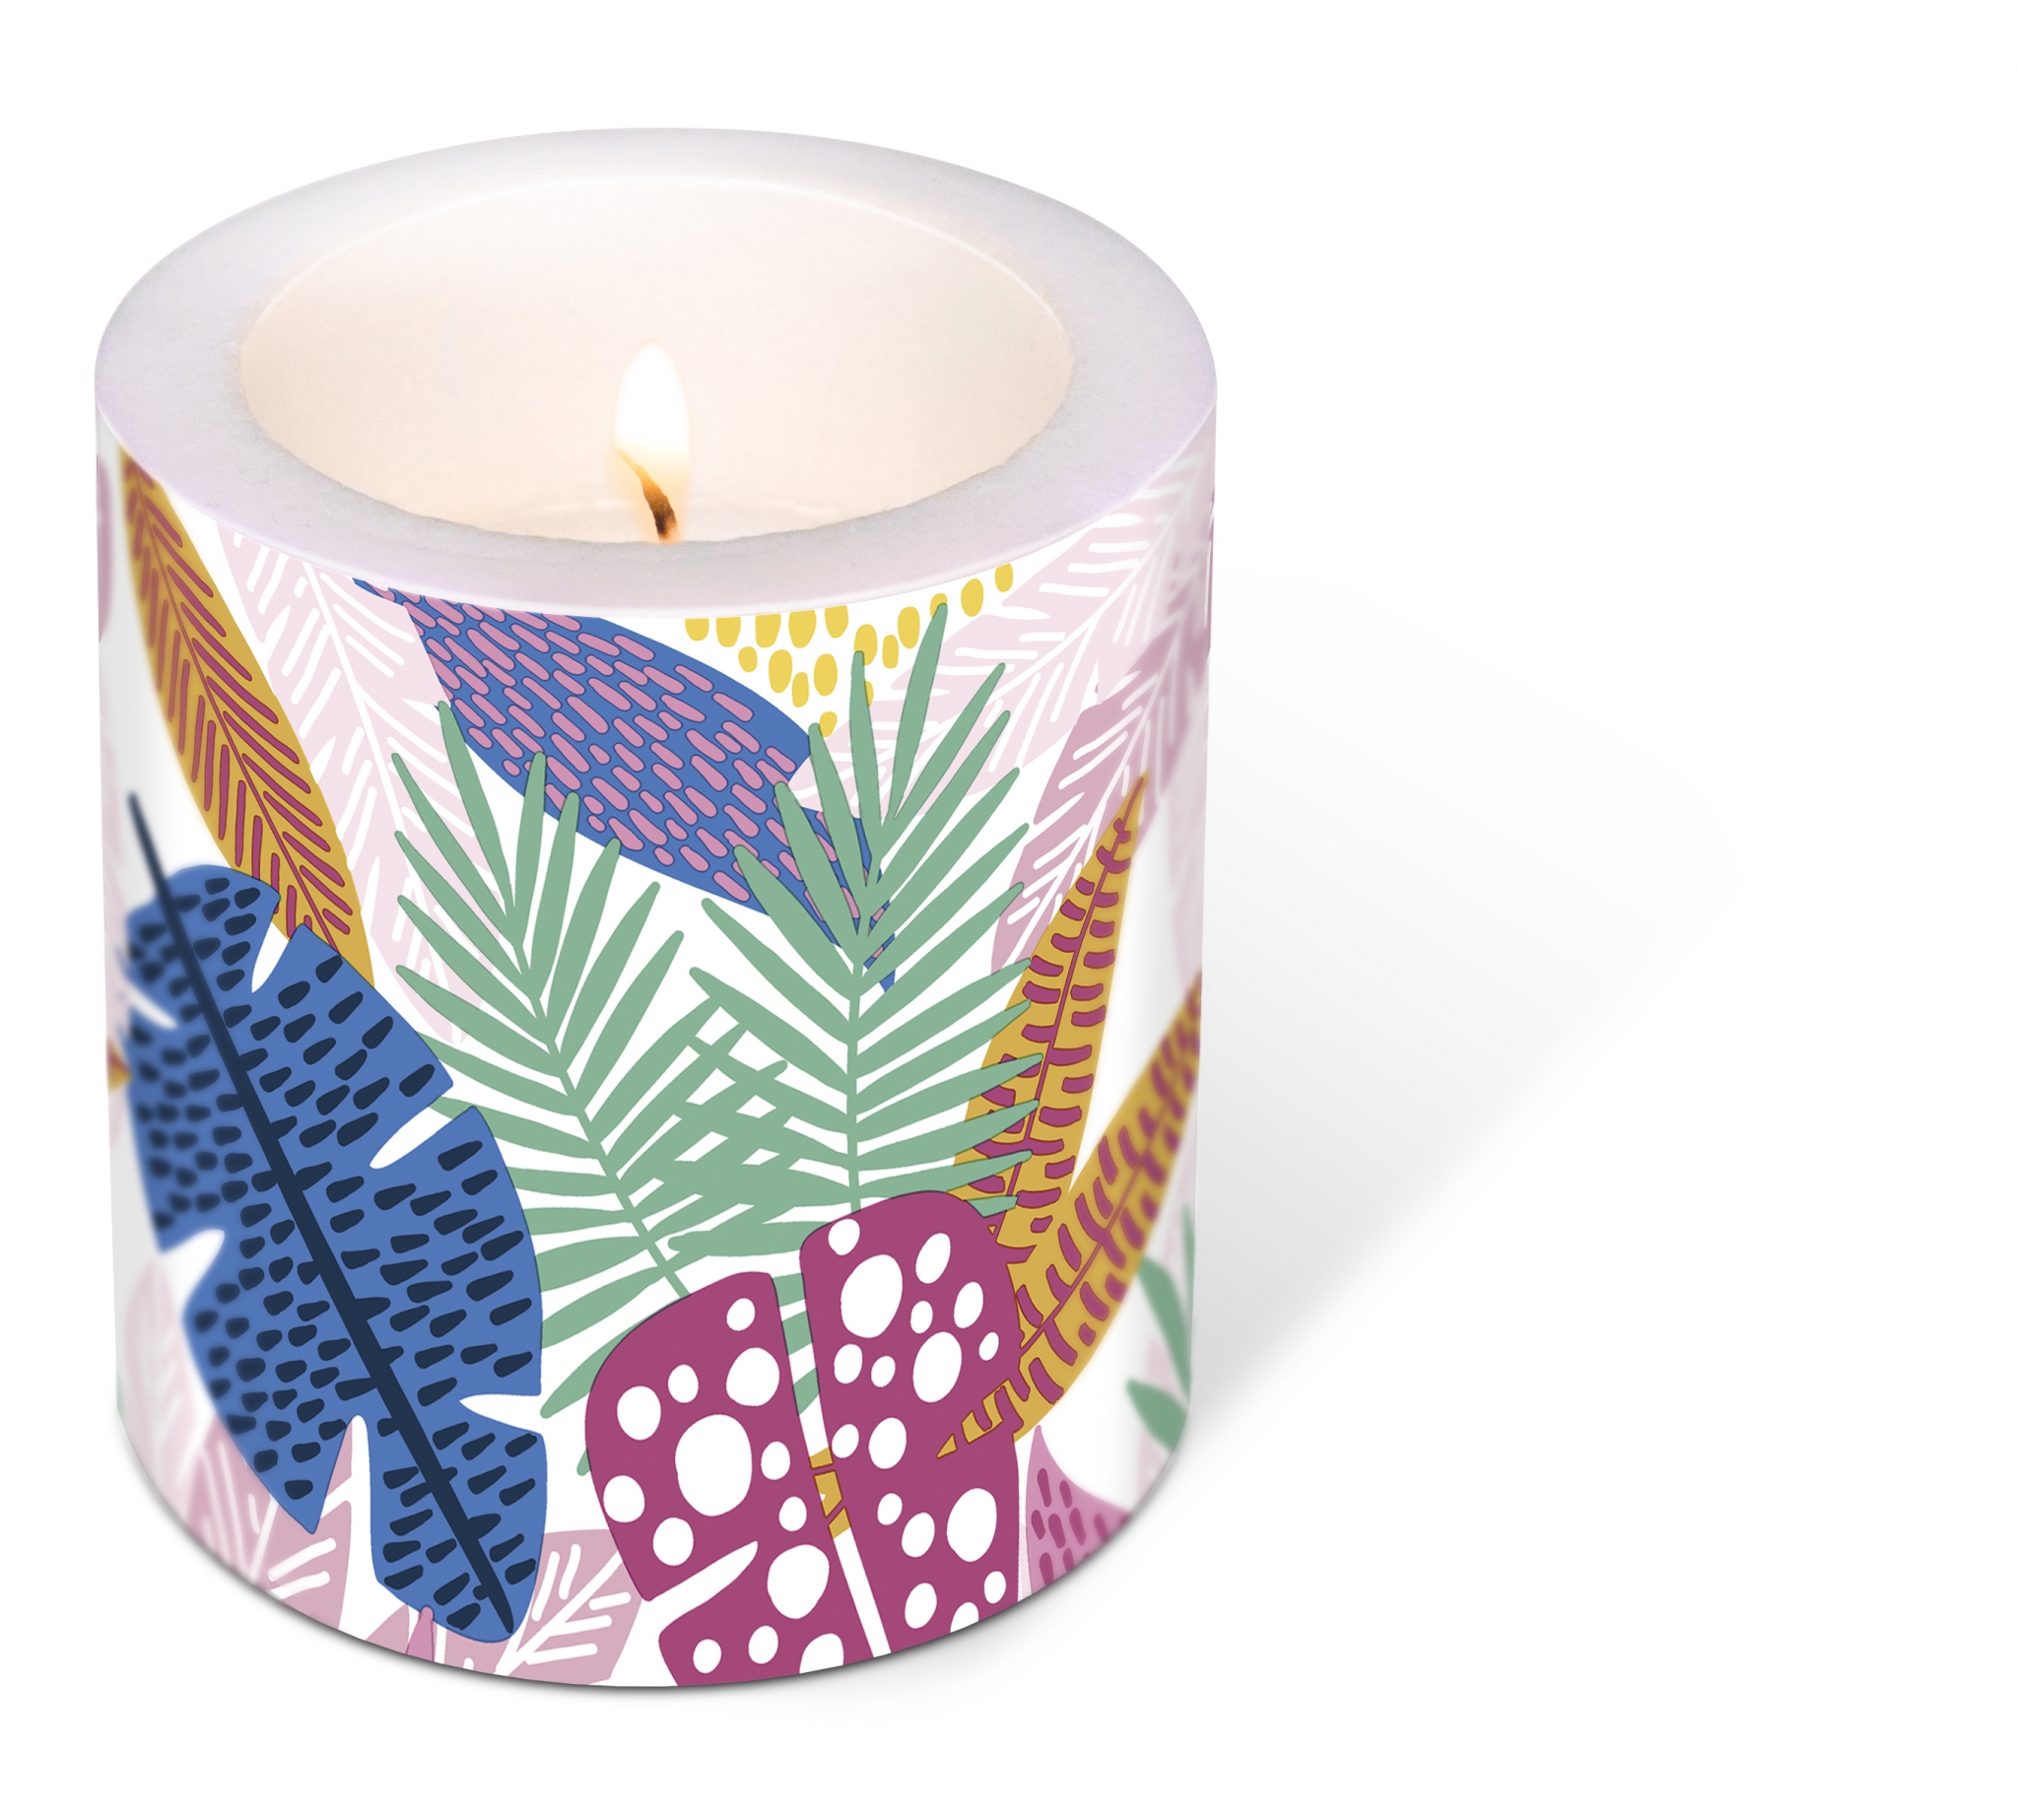 candela decorativa - Decorated Candle Wild leaves